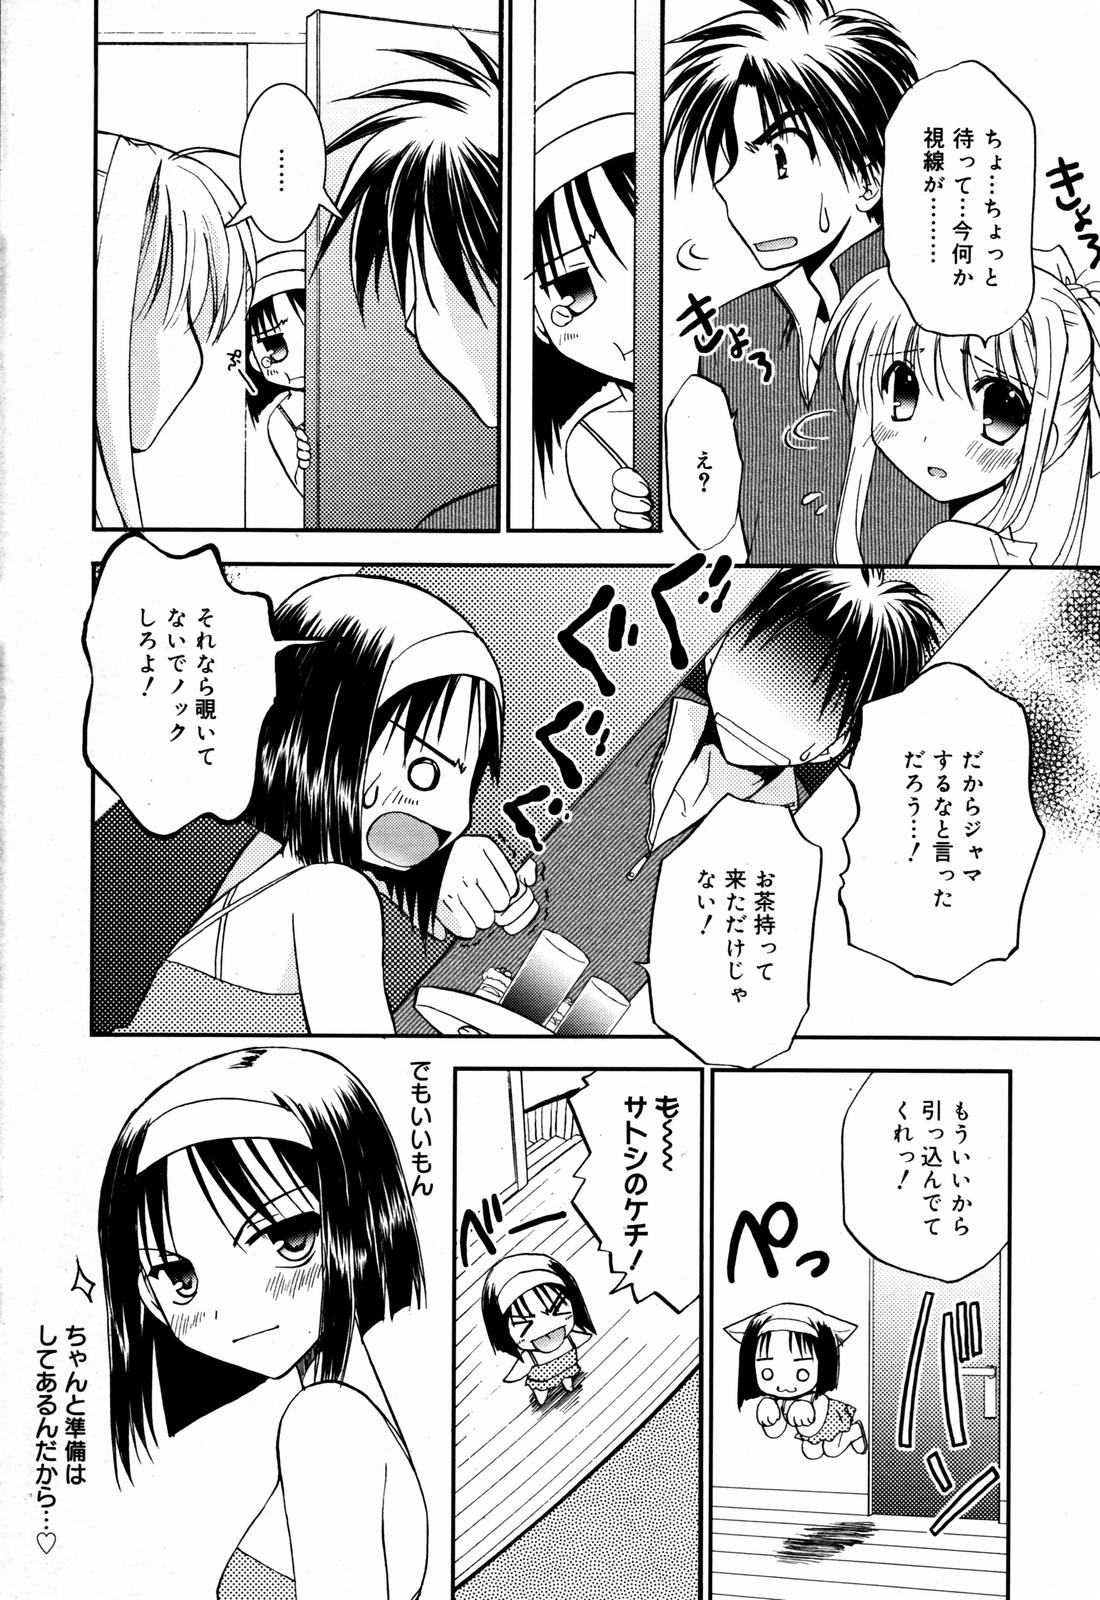 Manga Bangaichi 2007-08 Vol. 211 page 26 full